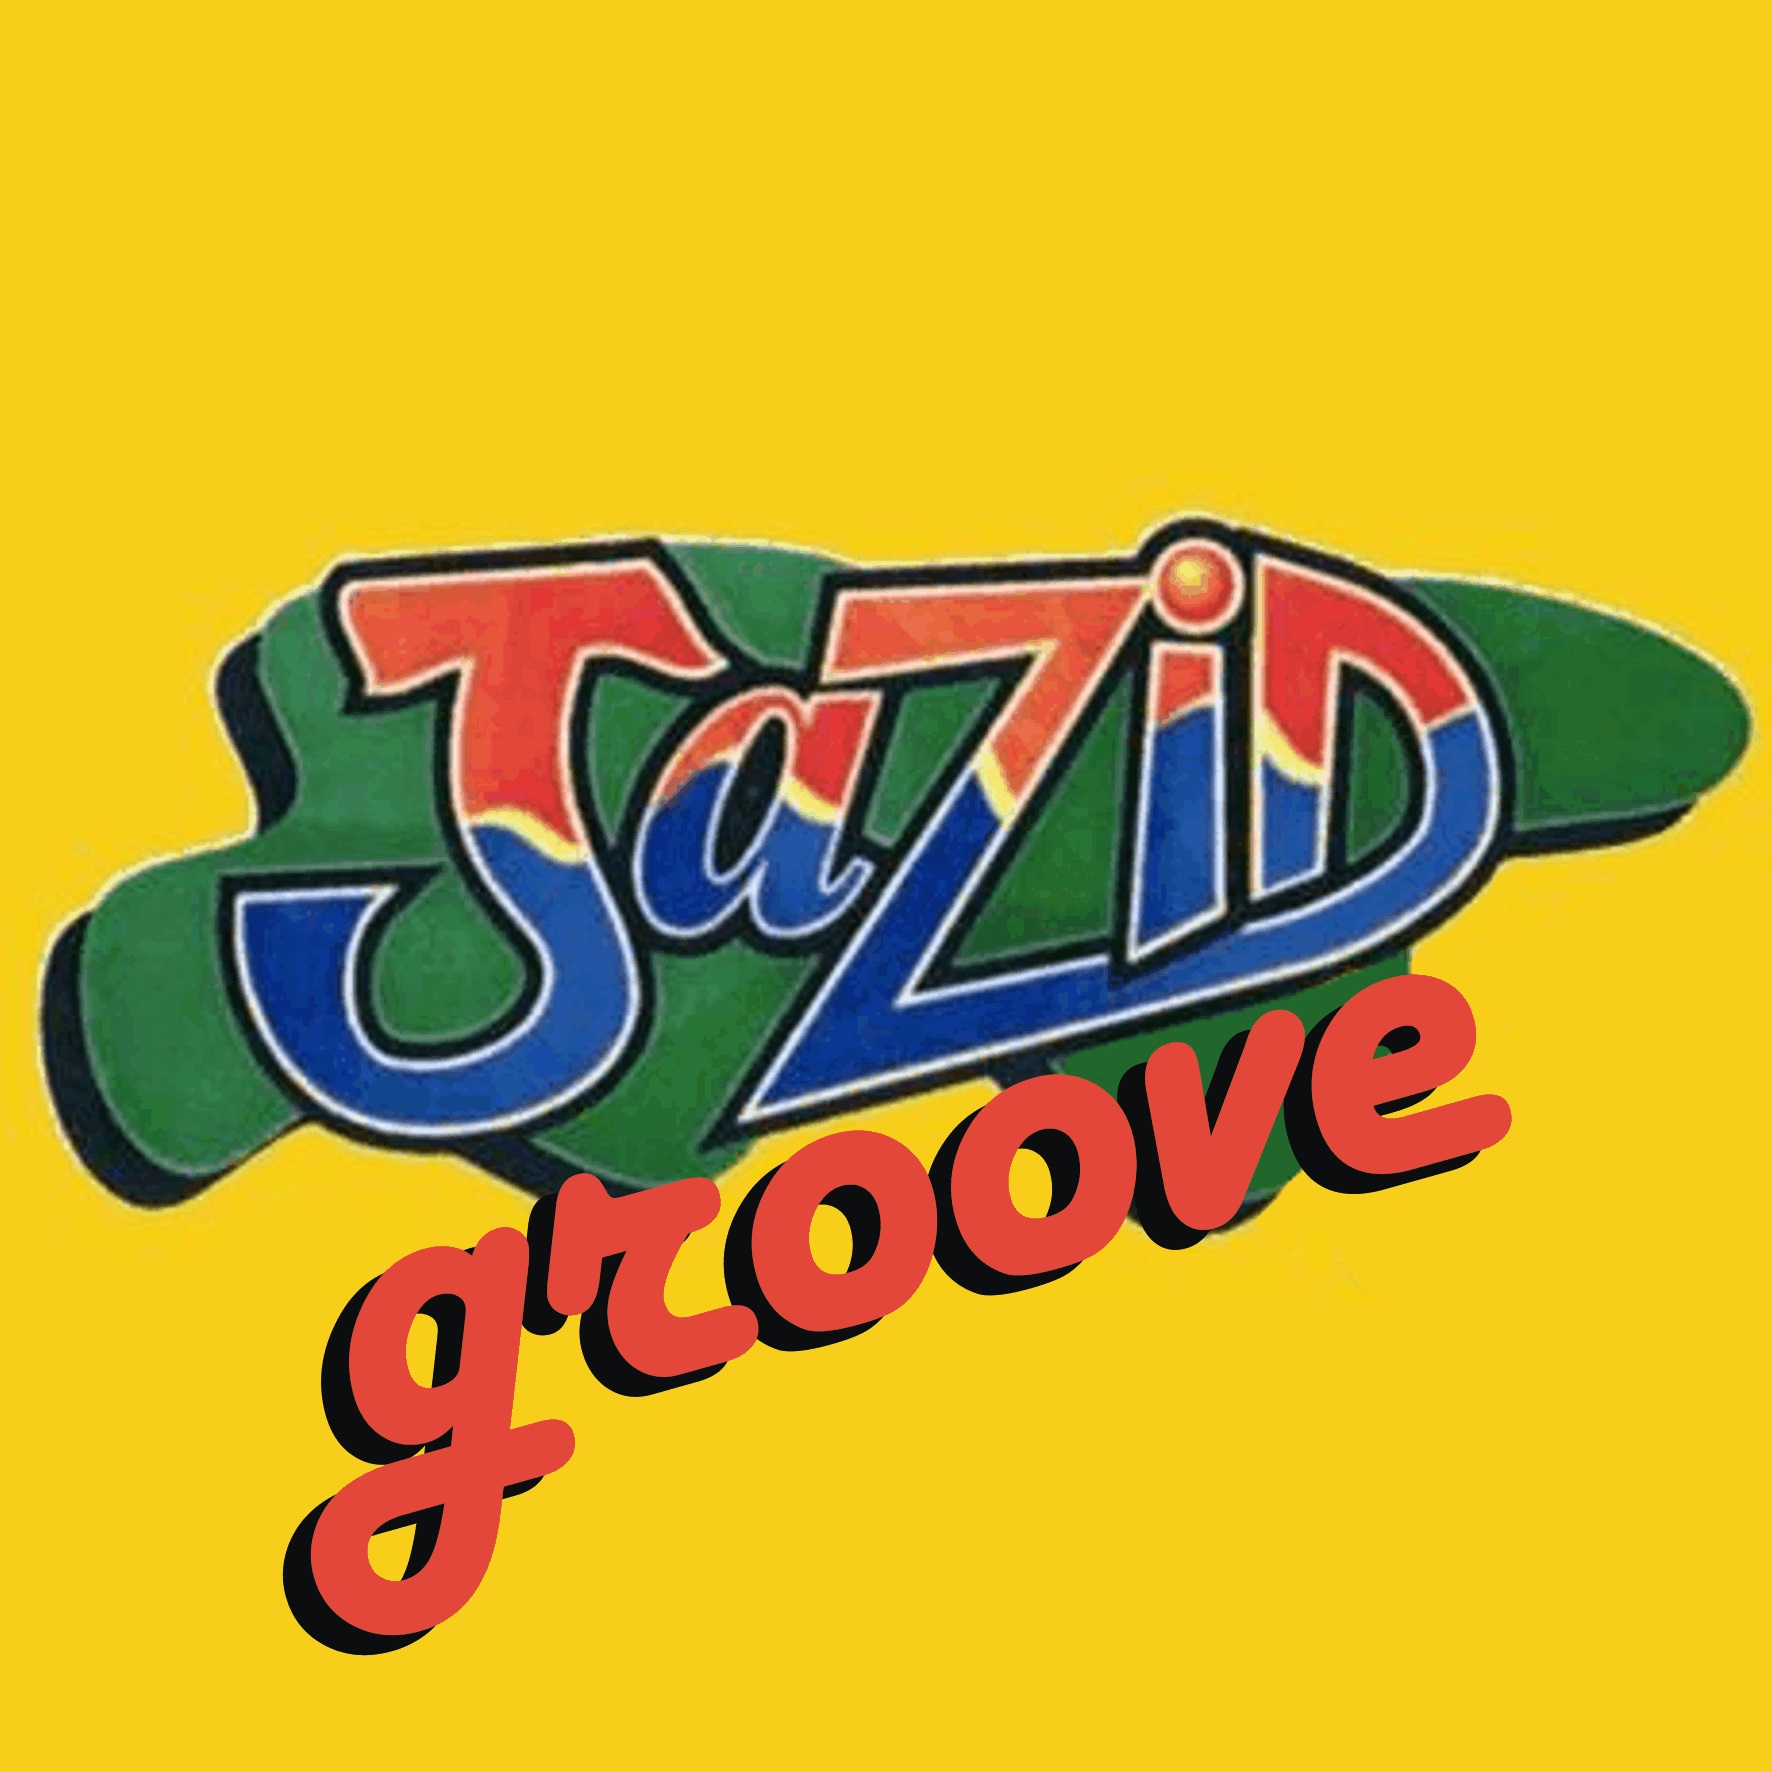 Jazid Groove 32